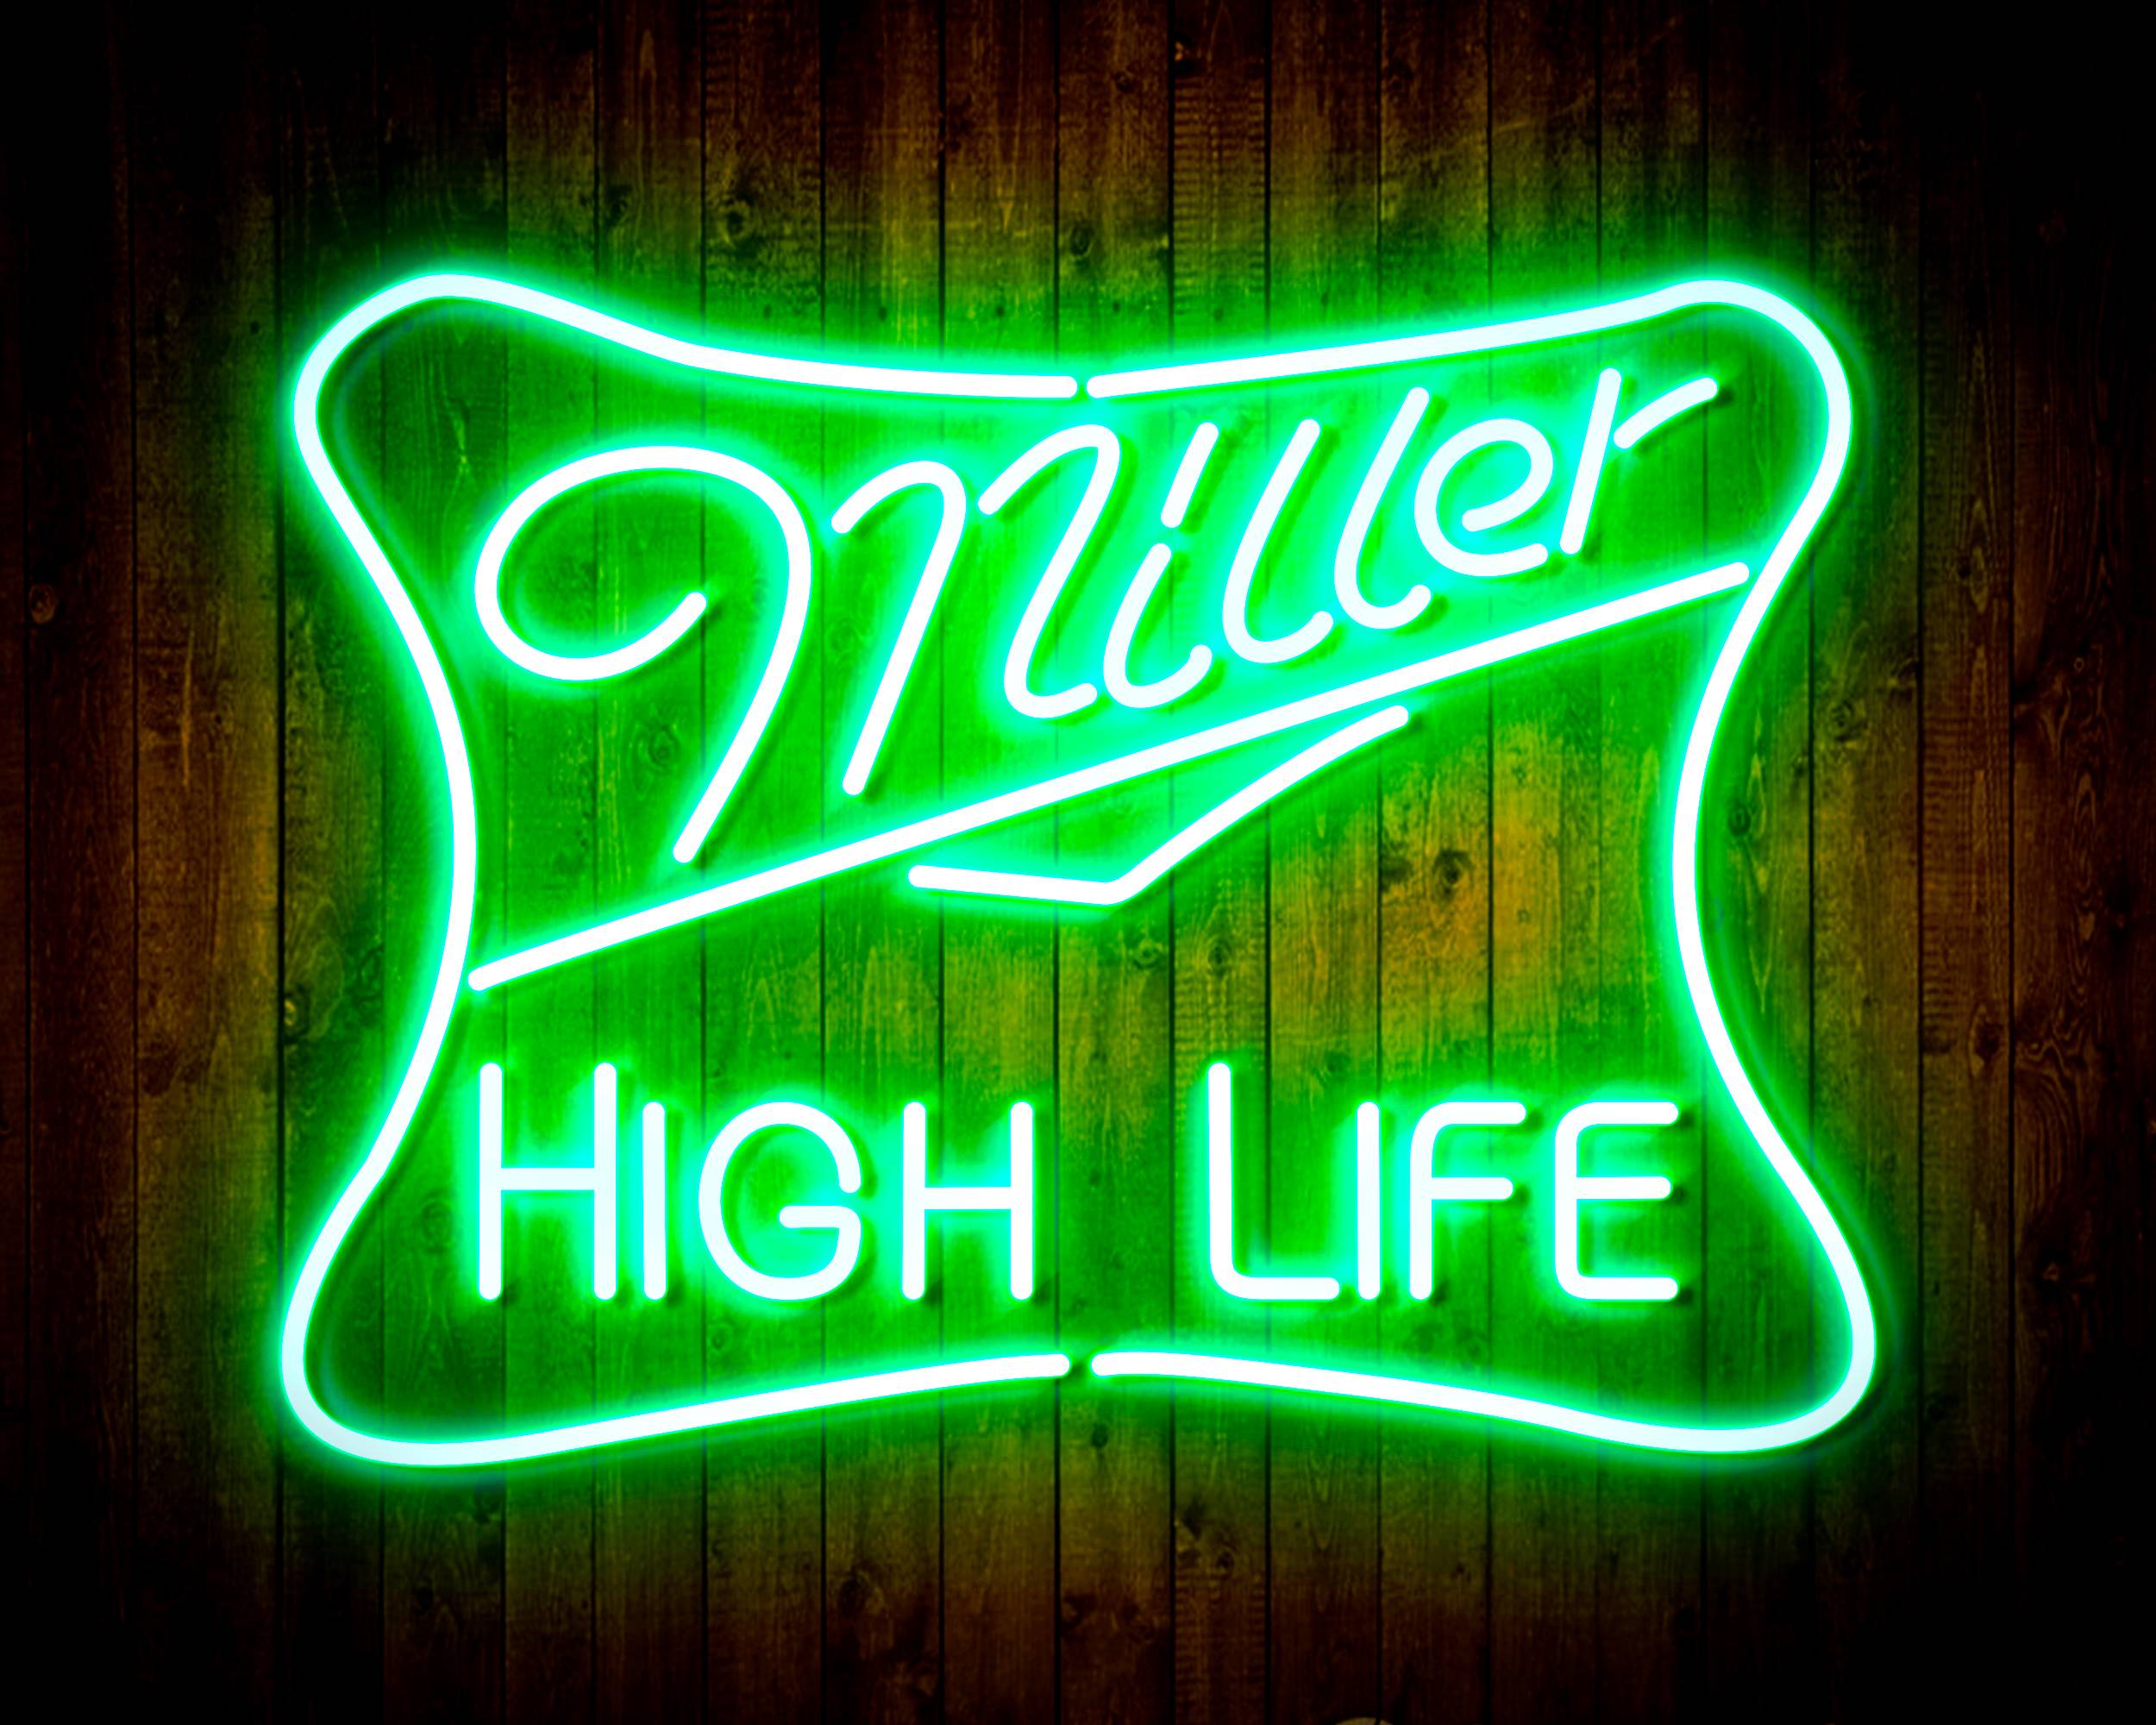 Miller High Life Handmade LED Neon Light Sign